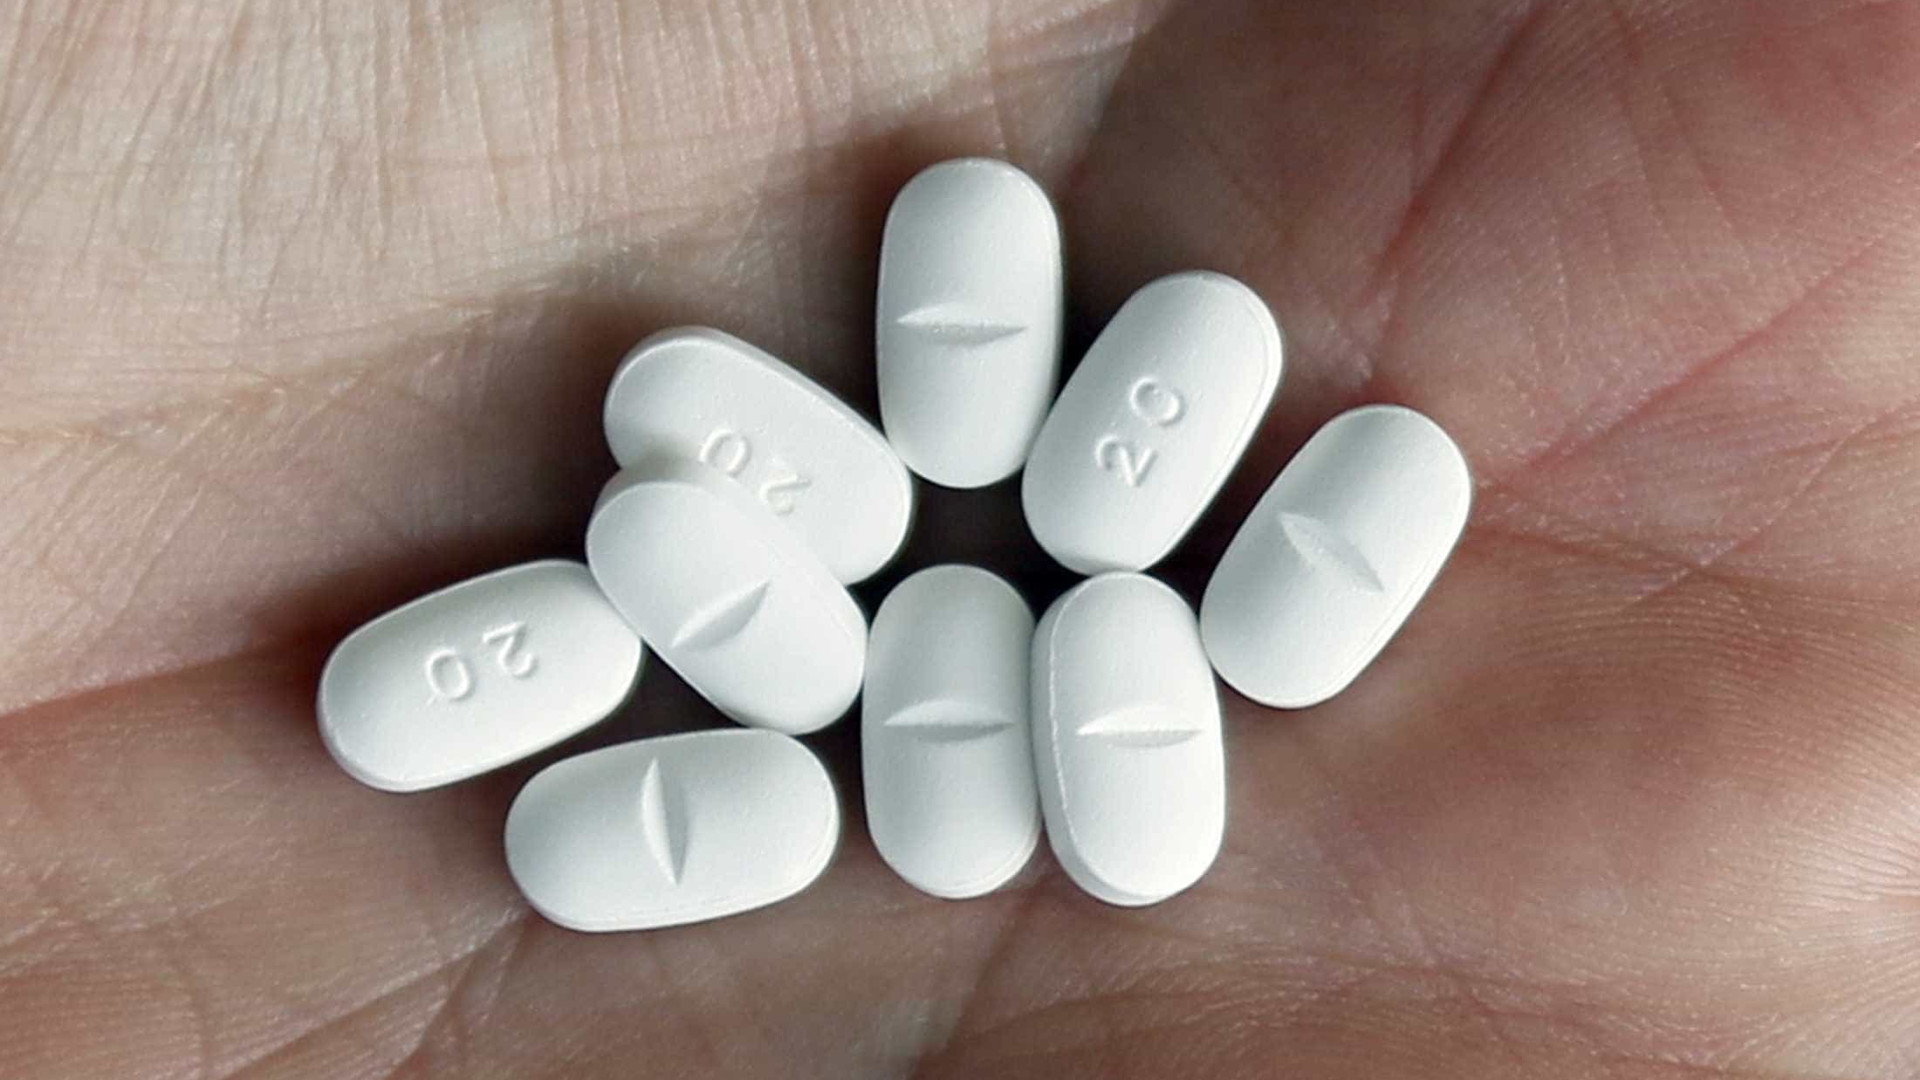 Seis amigos morreram em nove meses vítimas de pílulas de Valium falsas